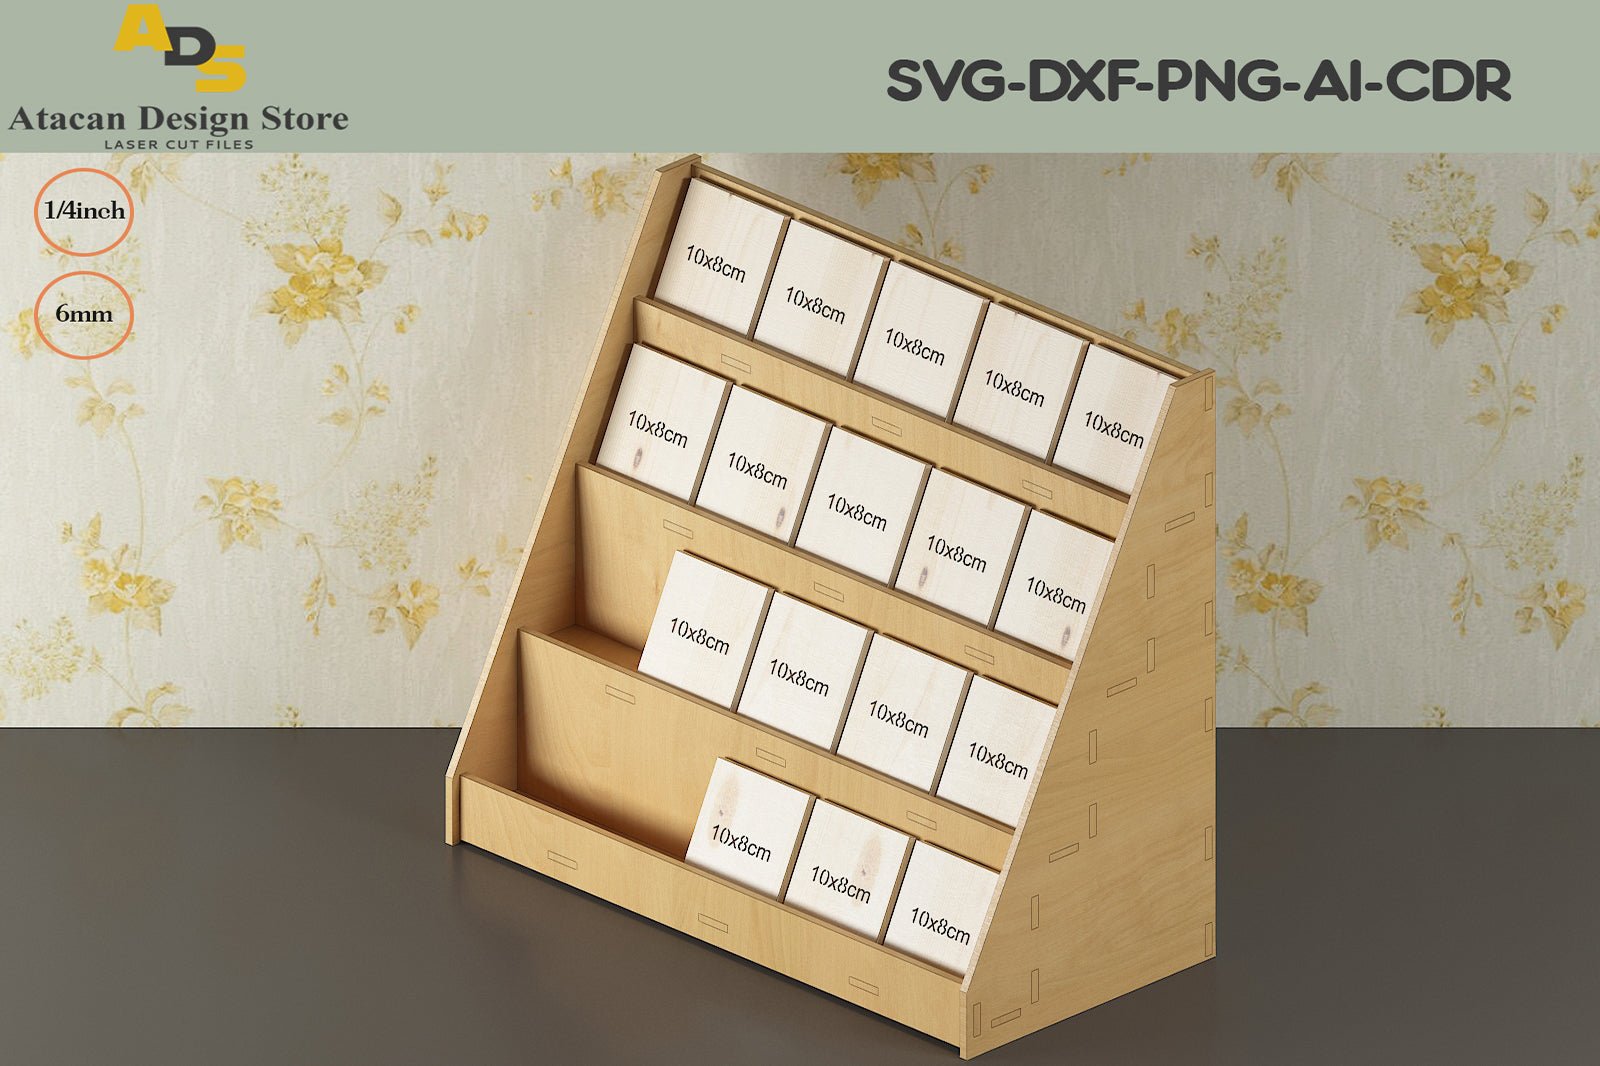 Keychain Jewelry craft show display stand. SVG DXF glowforge